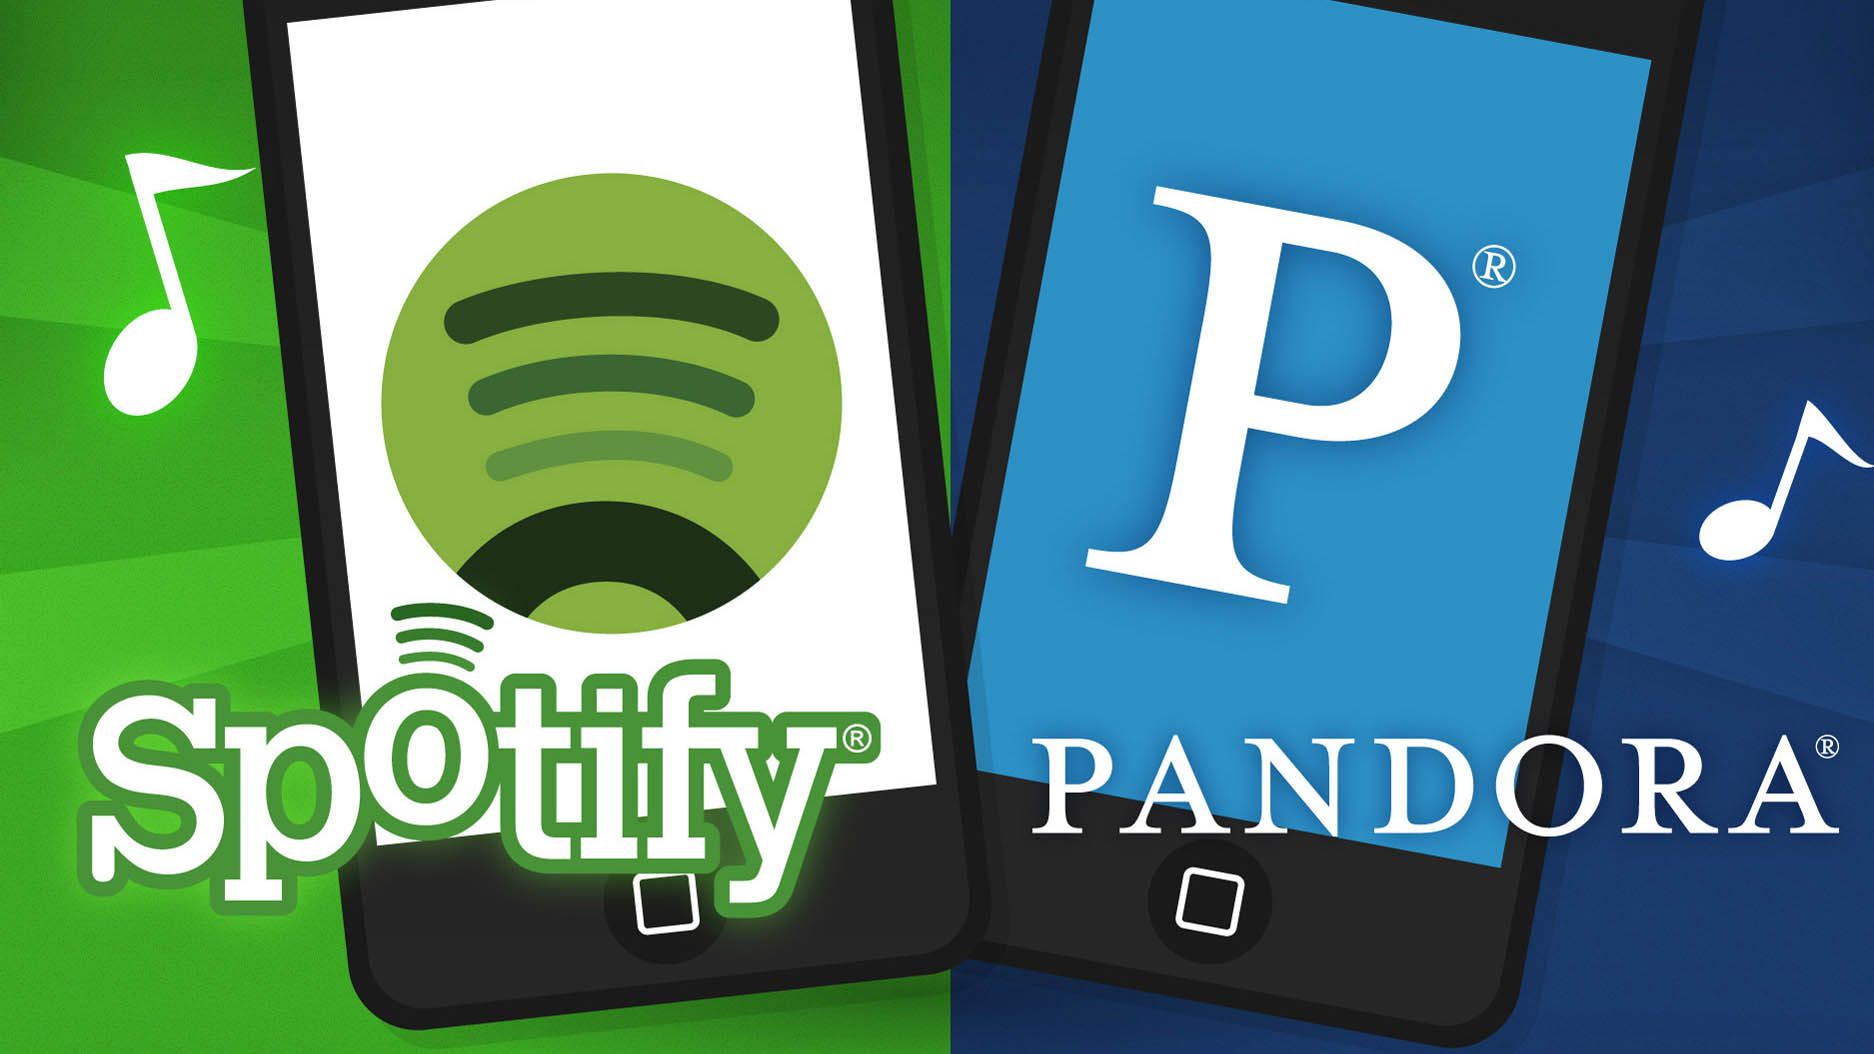 pandora versus spotify